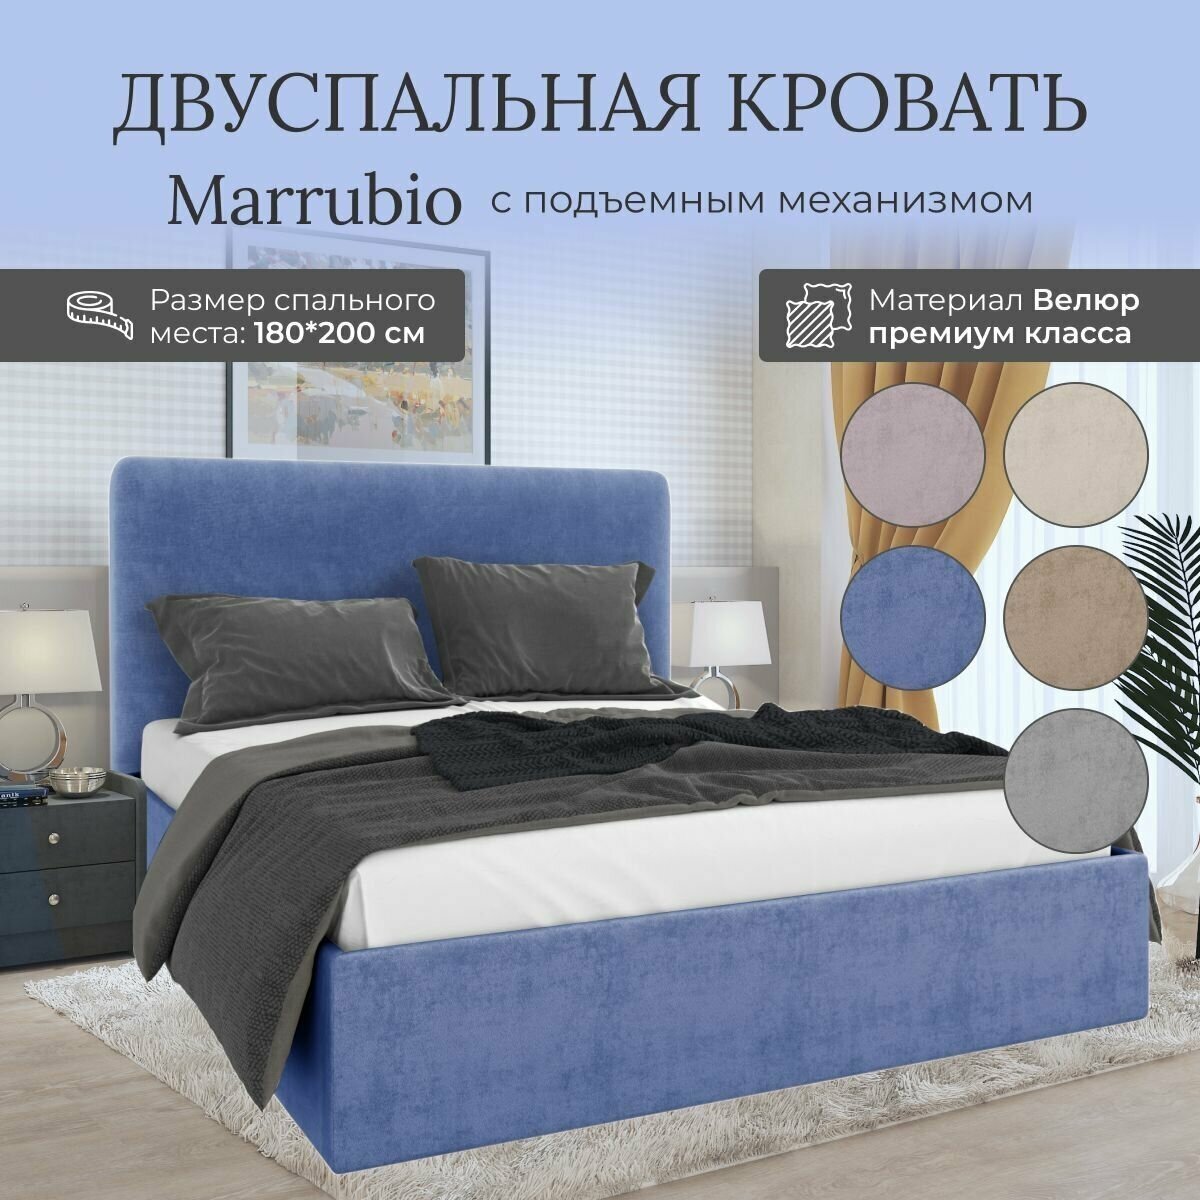 Кровать с подъемным механизмом Luxson Marrubio двуспальная размер 180х200